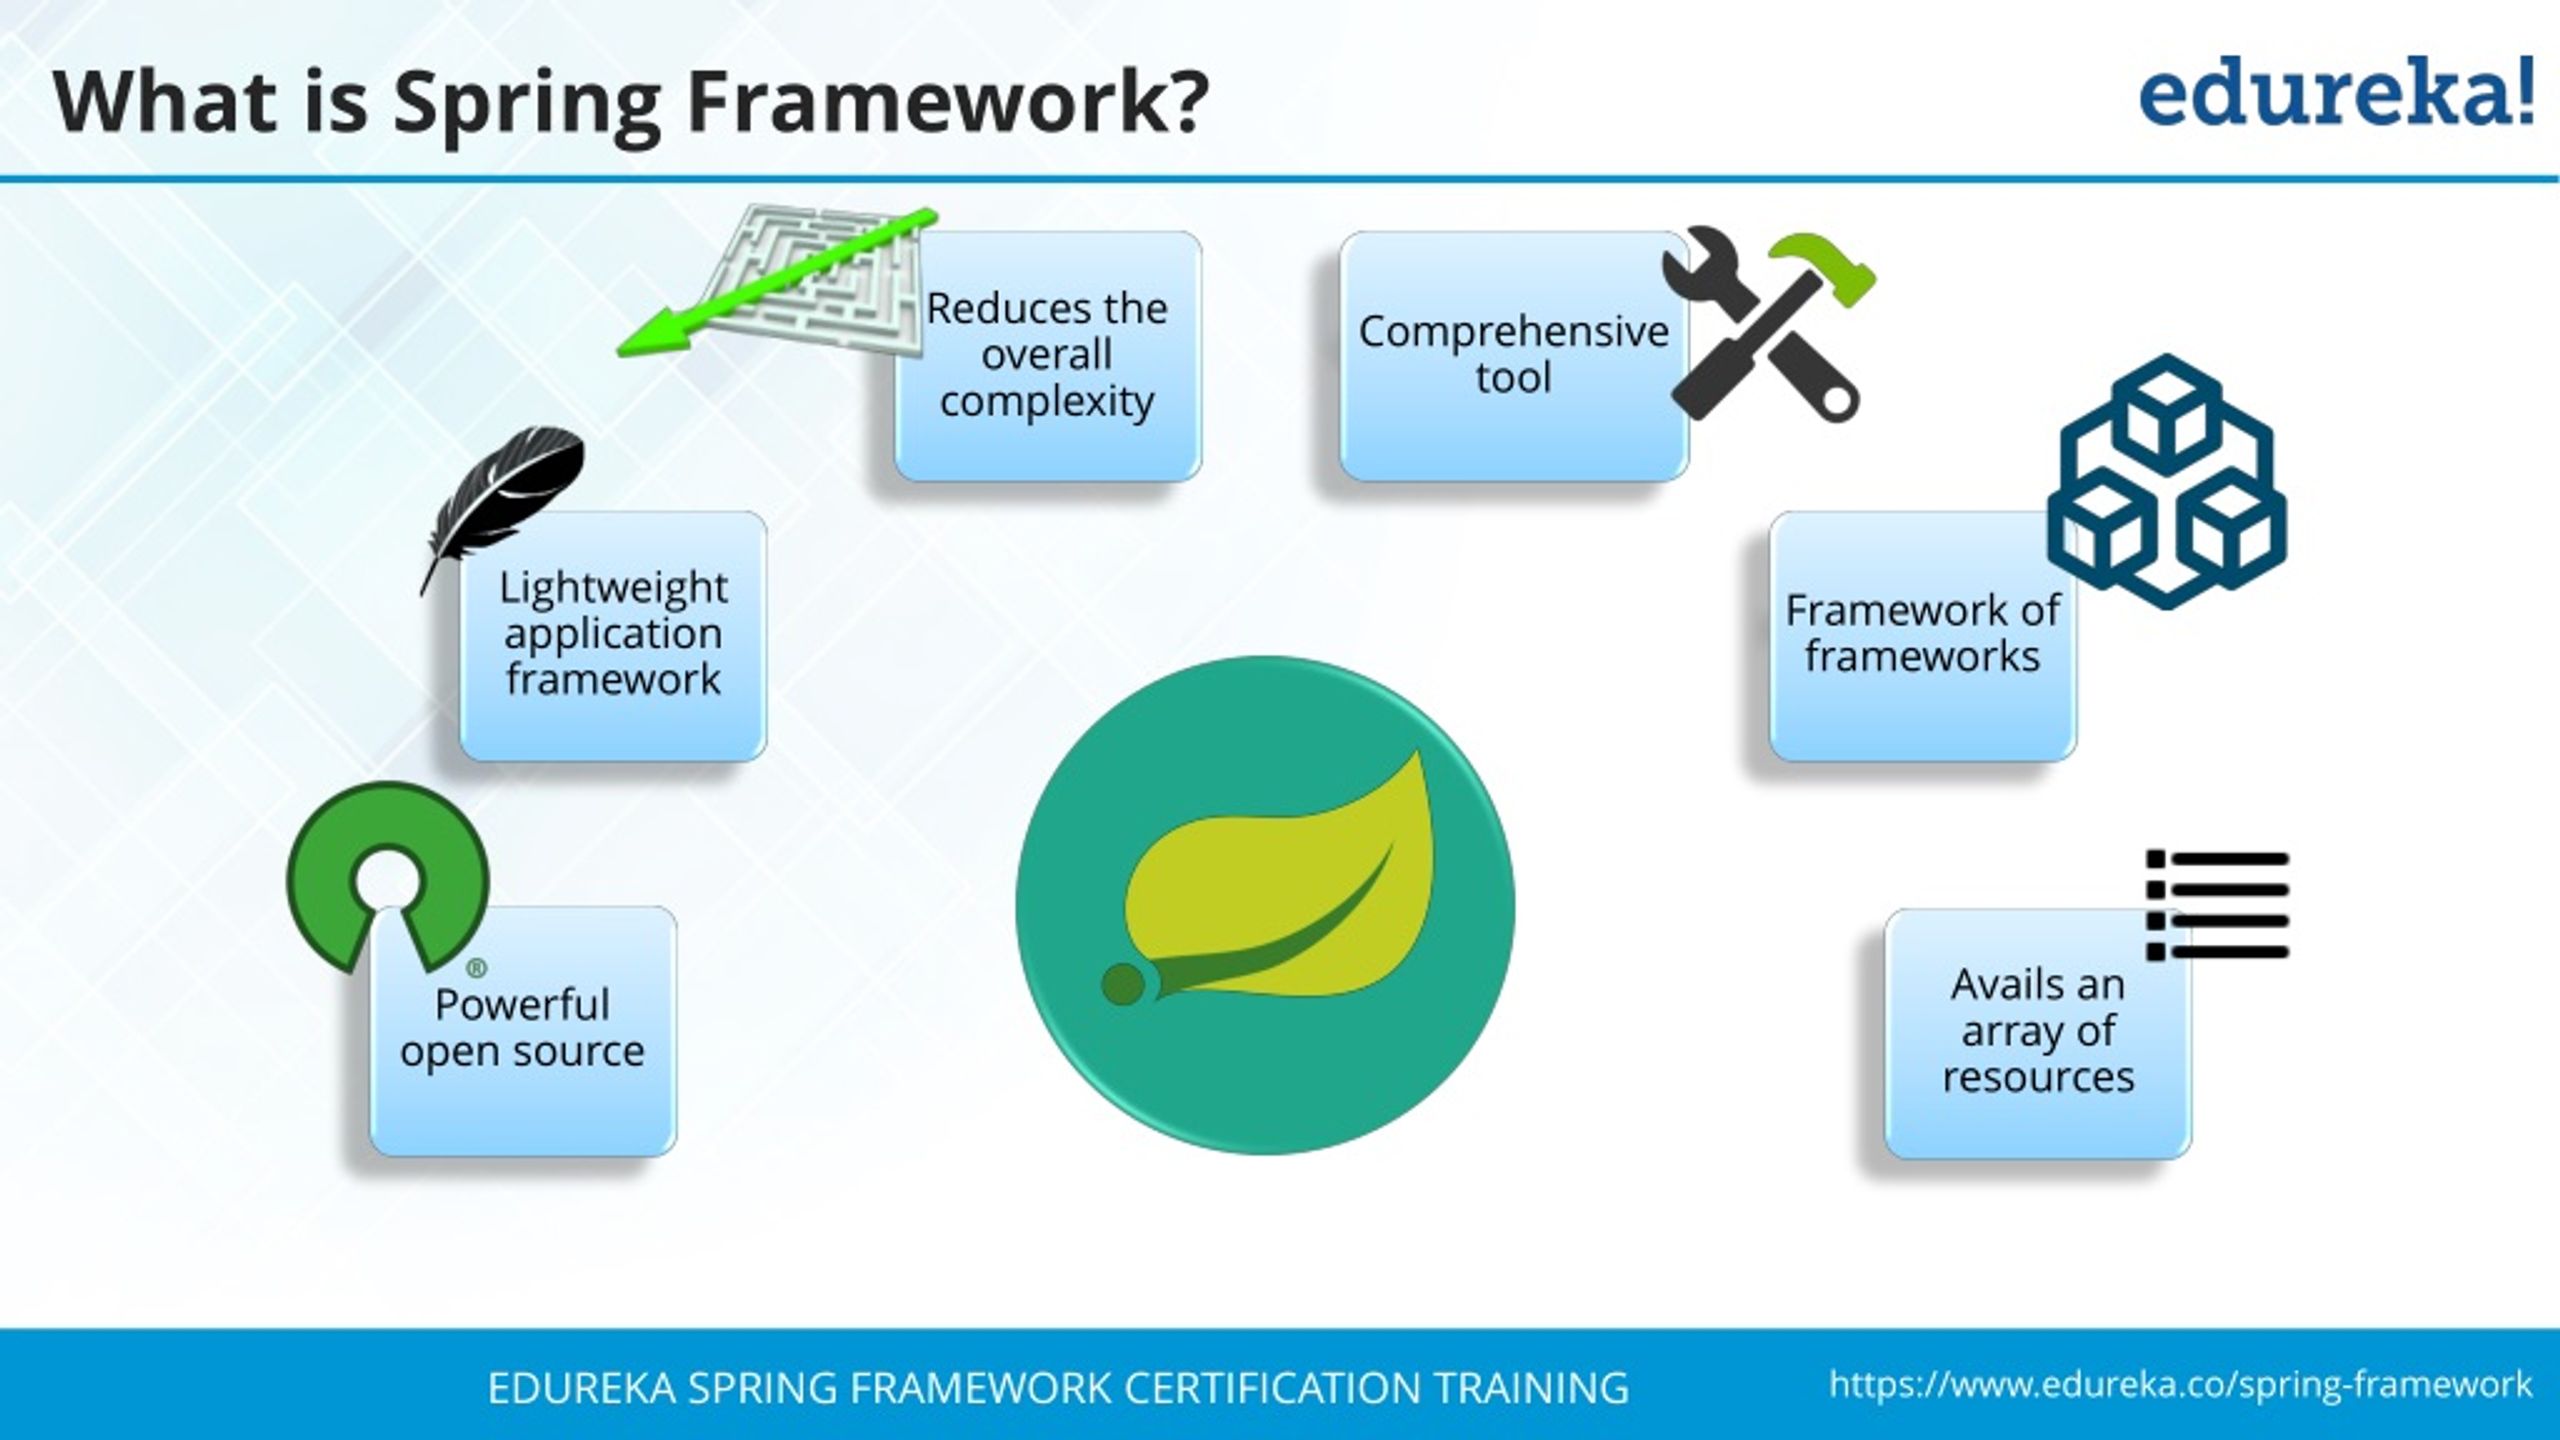 edureka spring framework